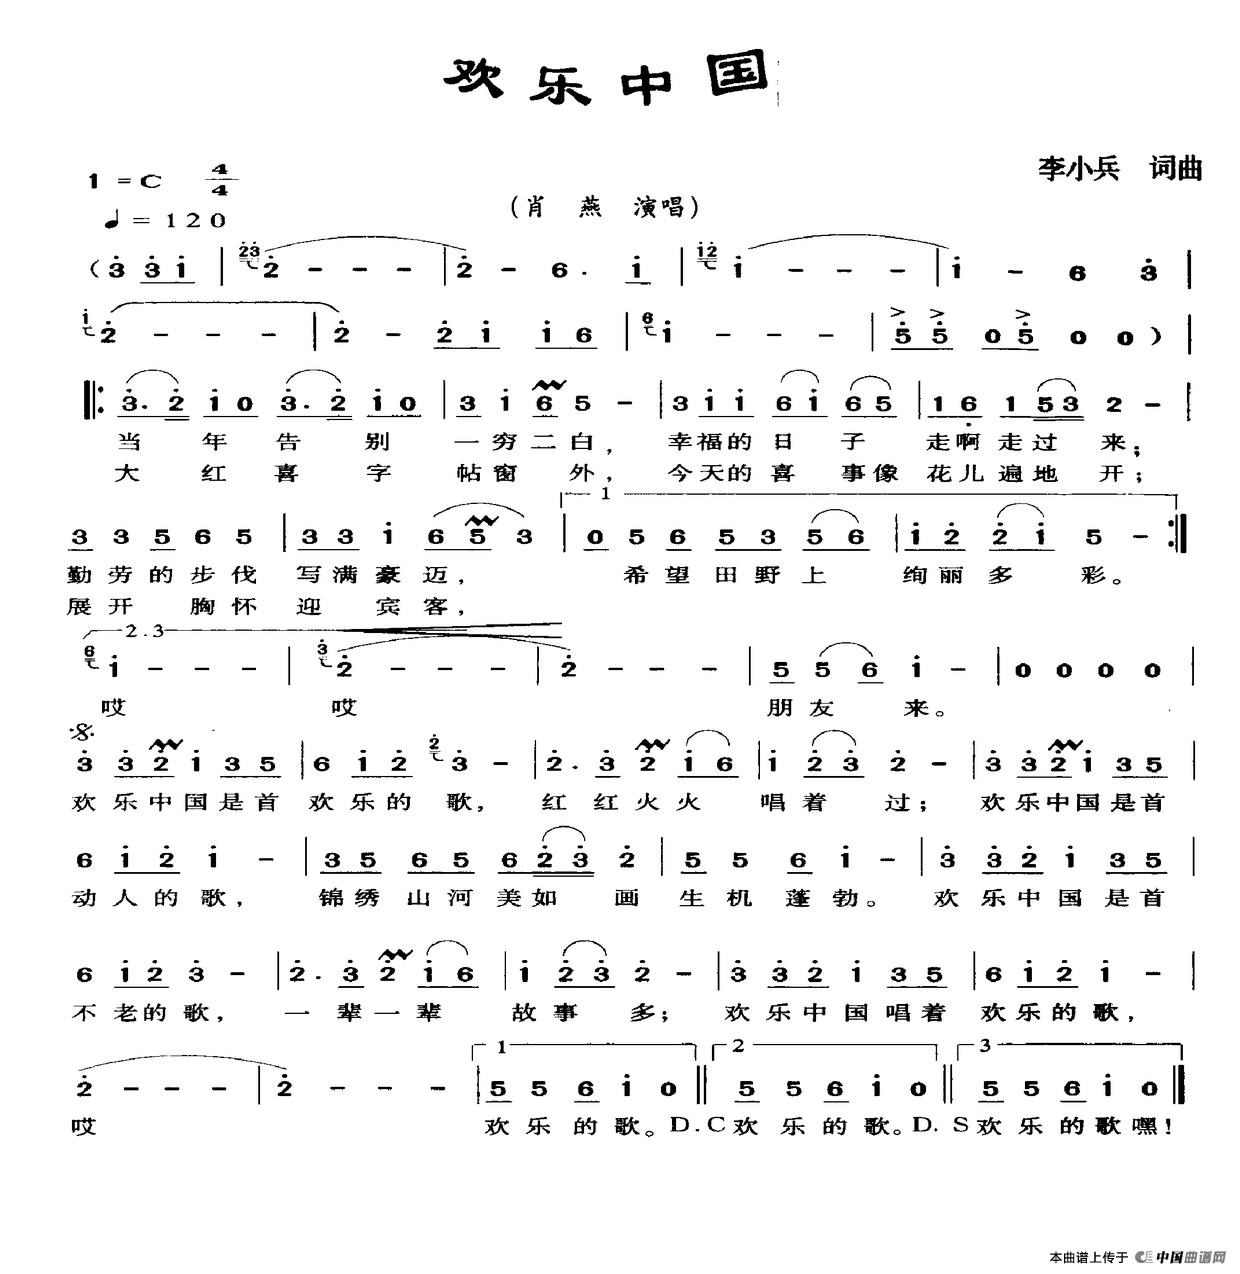 欢乐中国（李小兵词 李小兵曲）(1)_欢乐中国.png